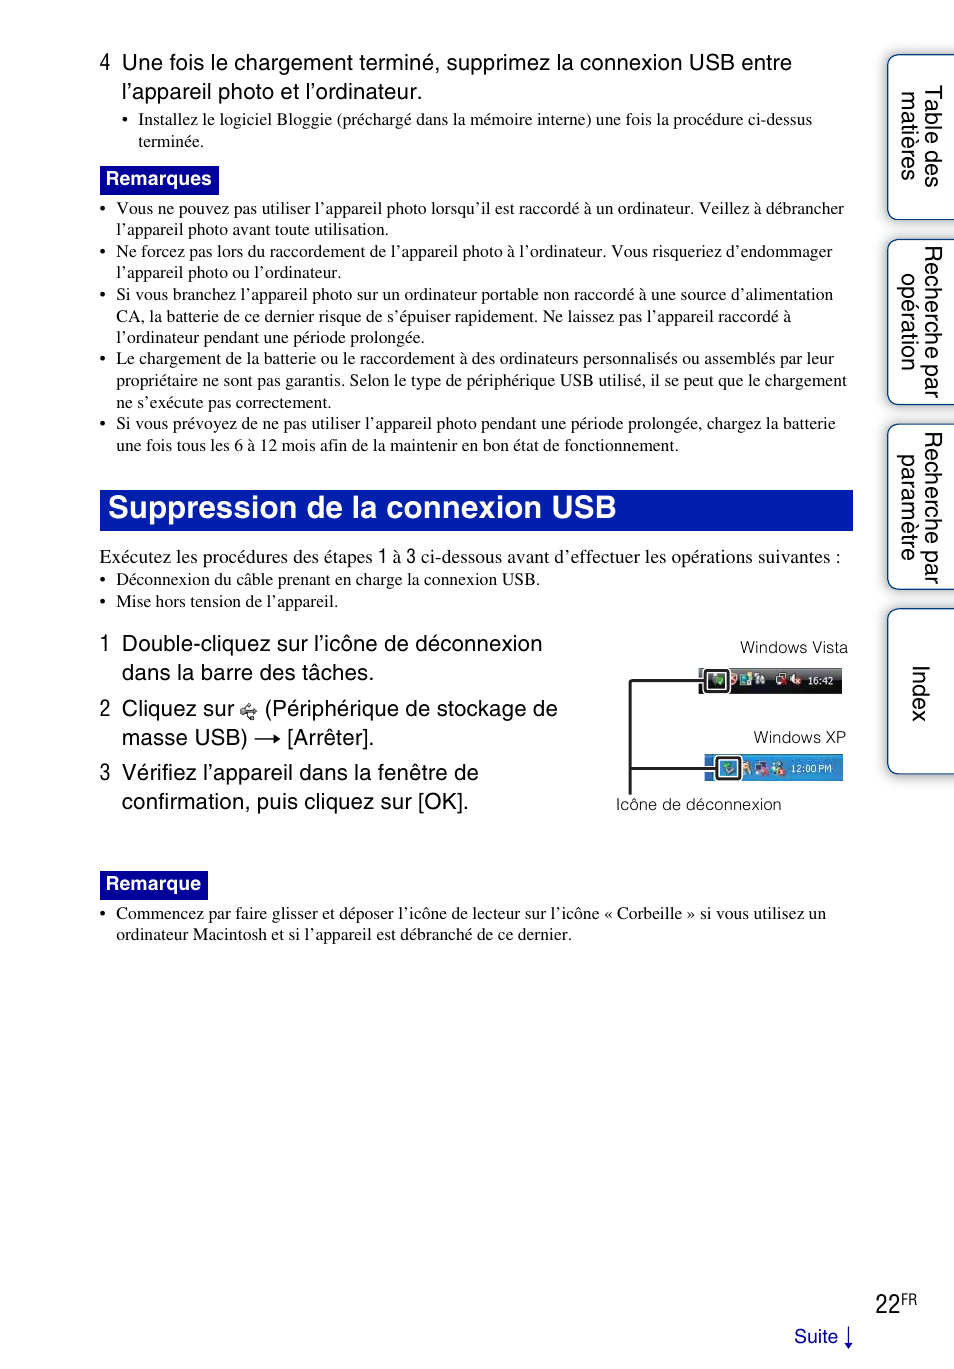 Suppression de la connexion usb | Sony bloggie MHS-TS20 Manuel d'utilisation | Page 22 / 75